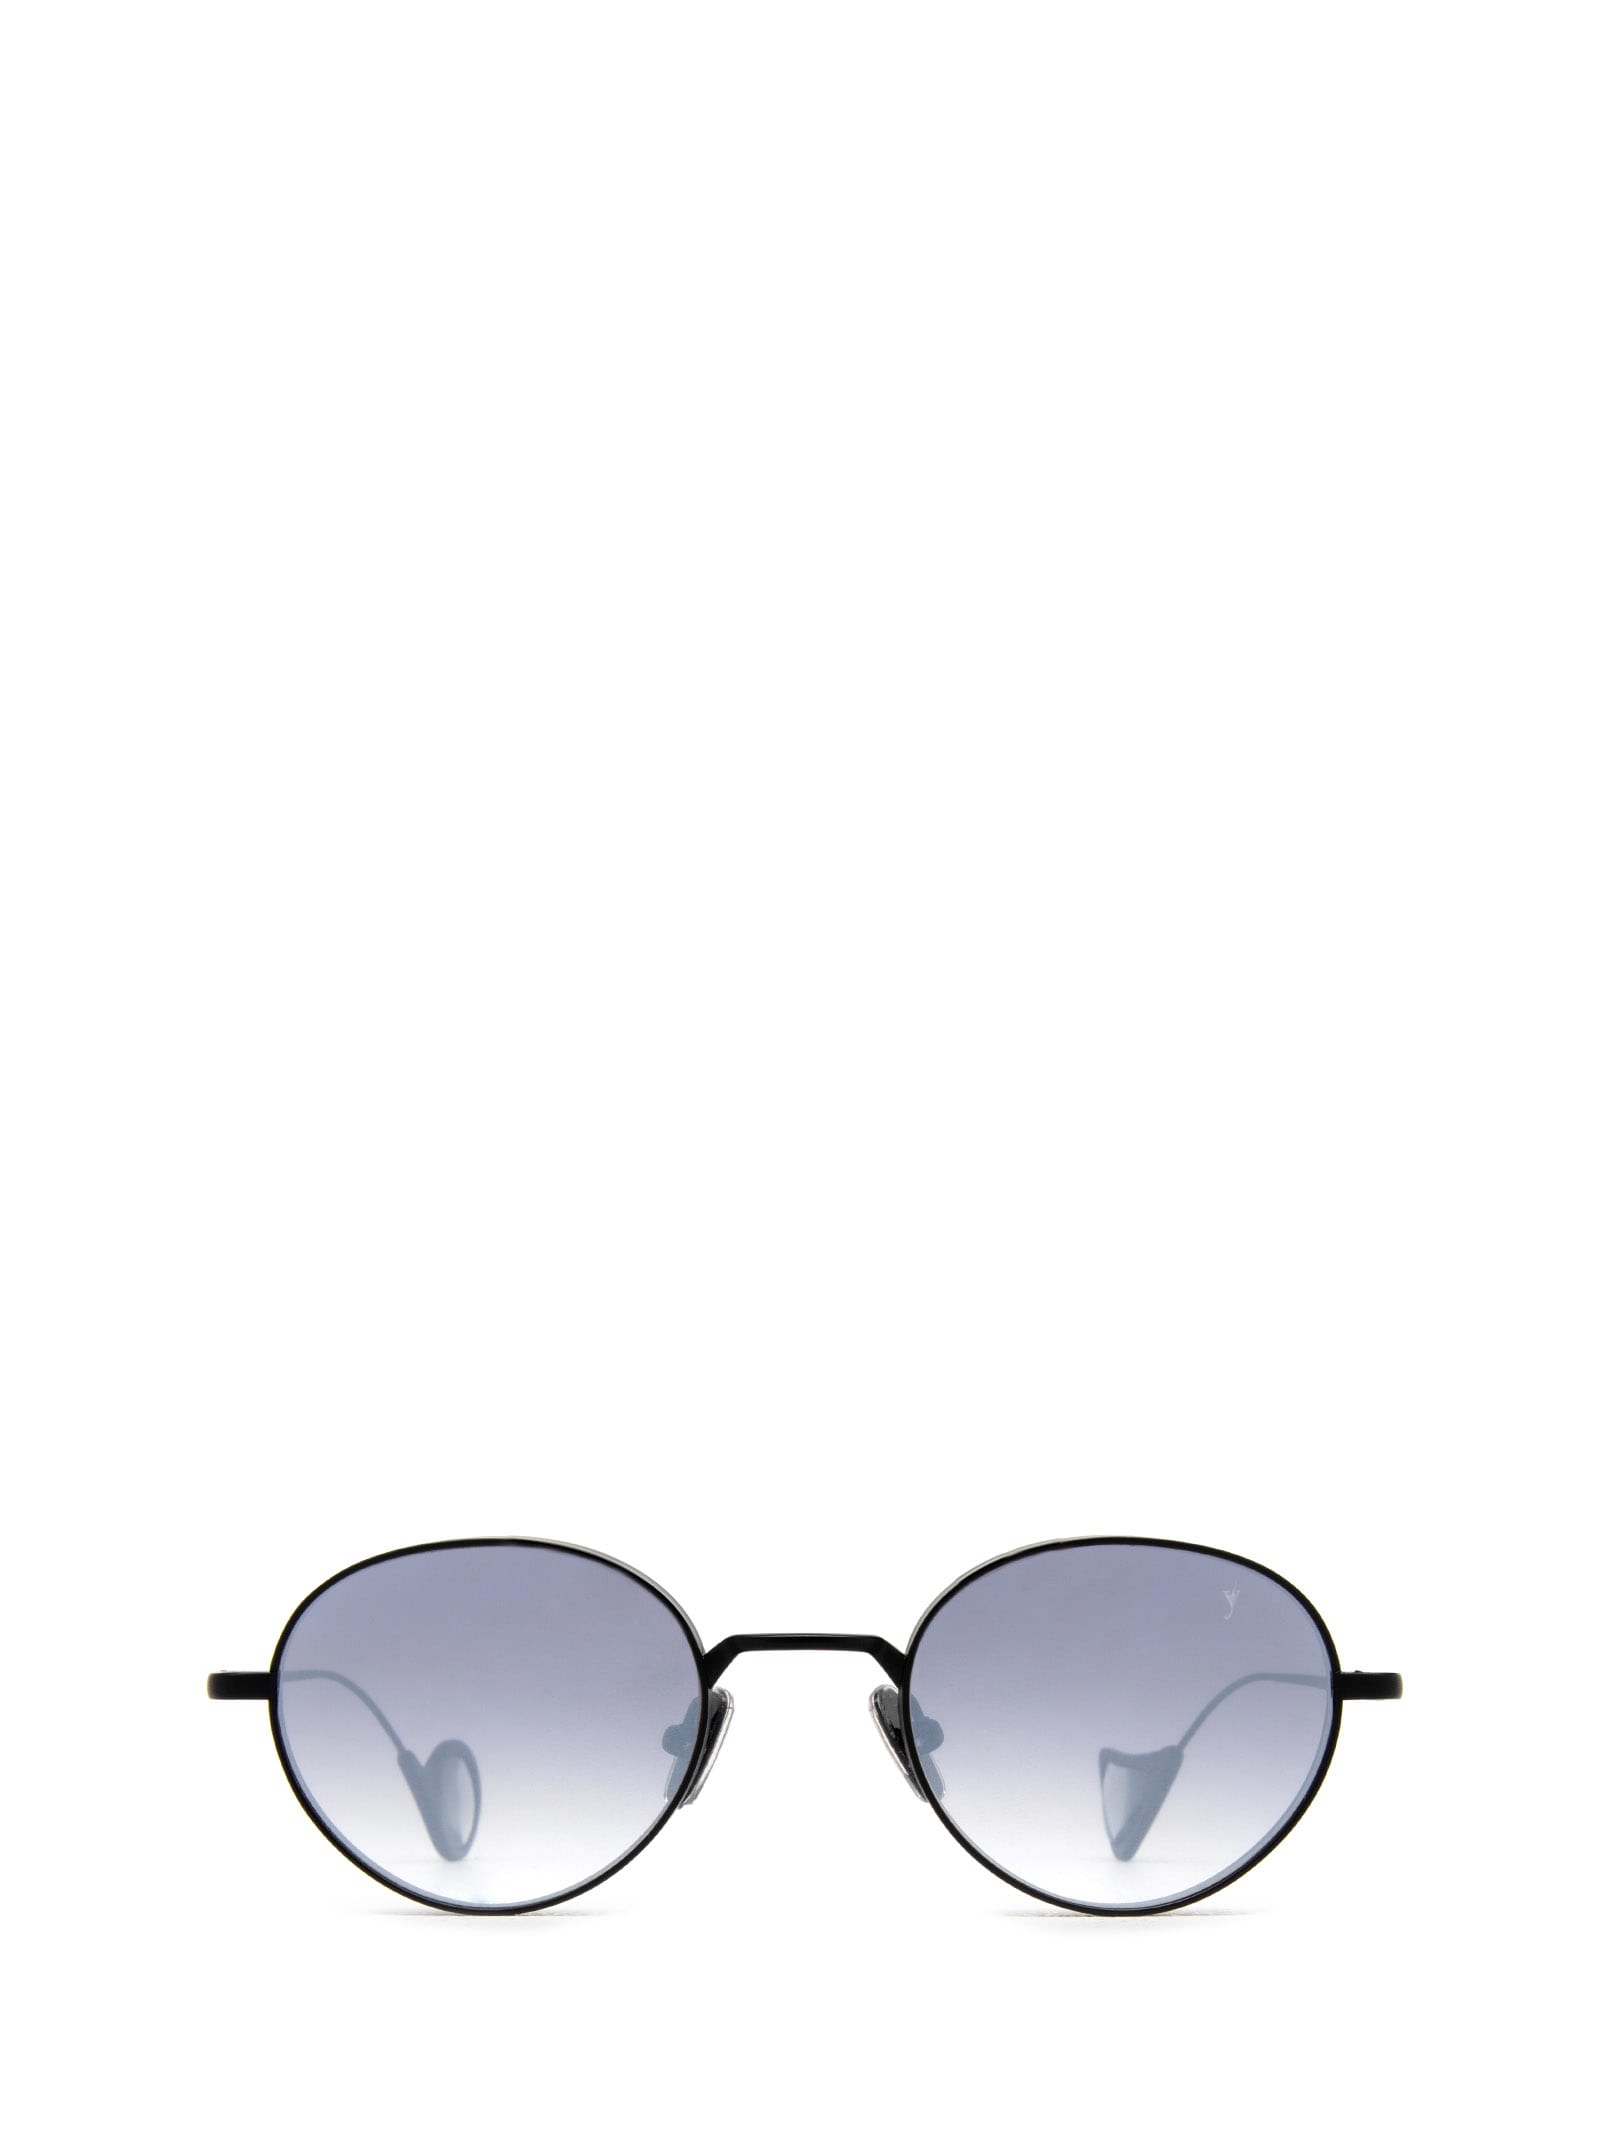 Alamillo Matt Black Sunglasses